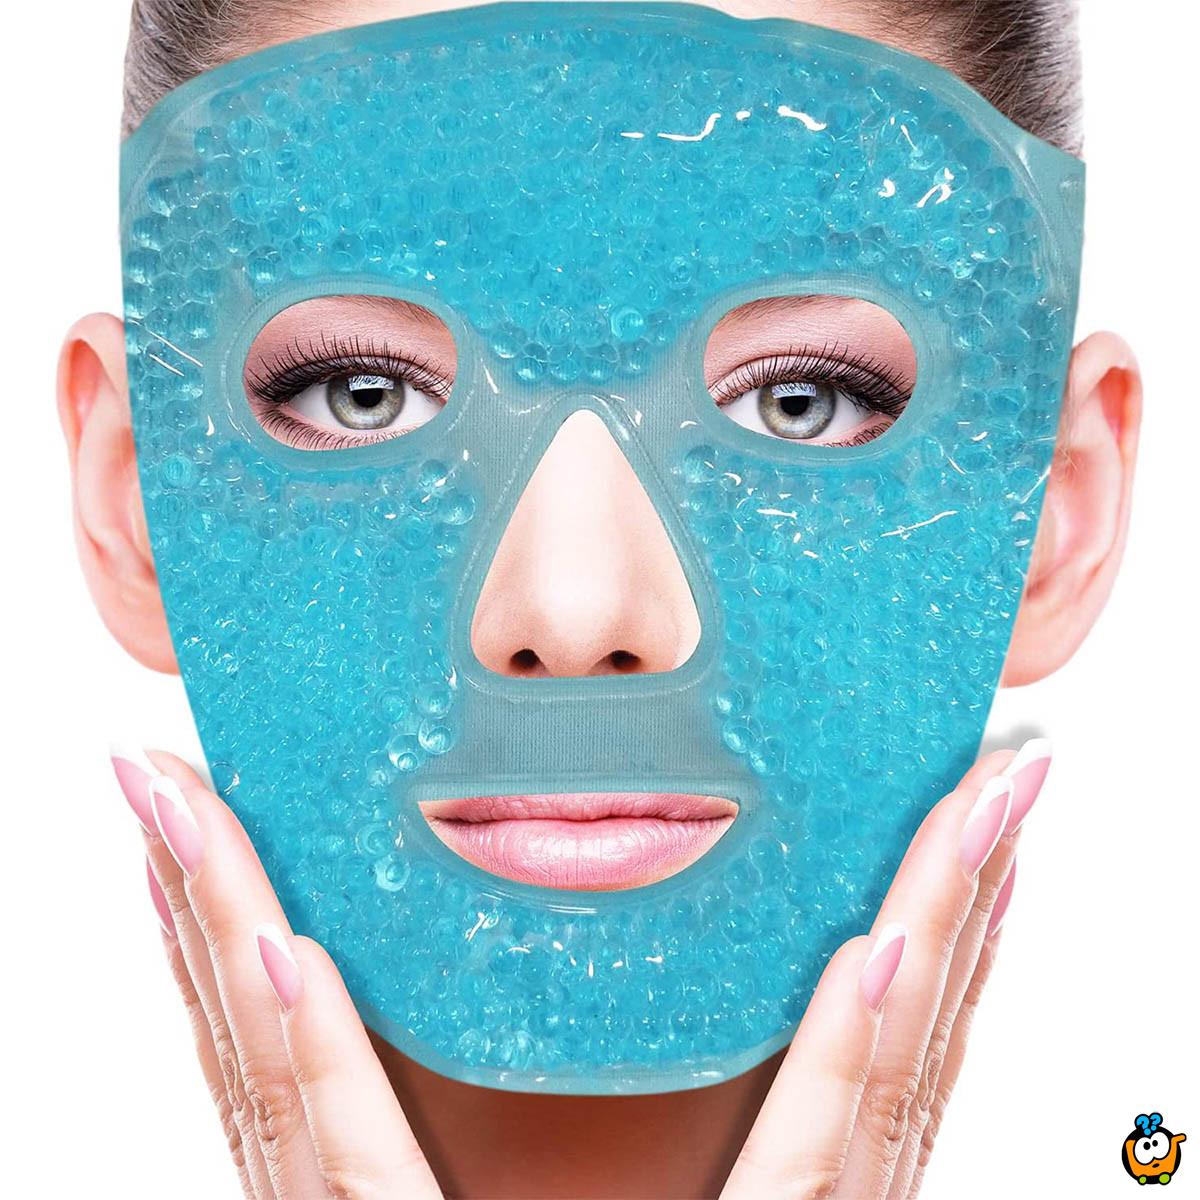 Ledena gel maska za relaksaciju i ublažavanje glavobolje